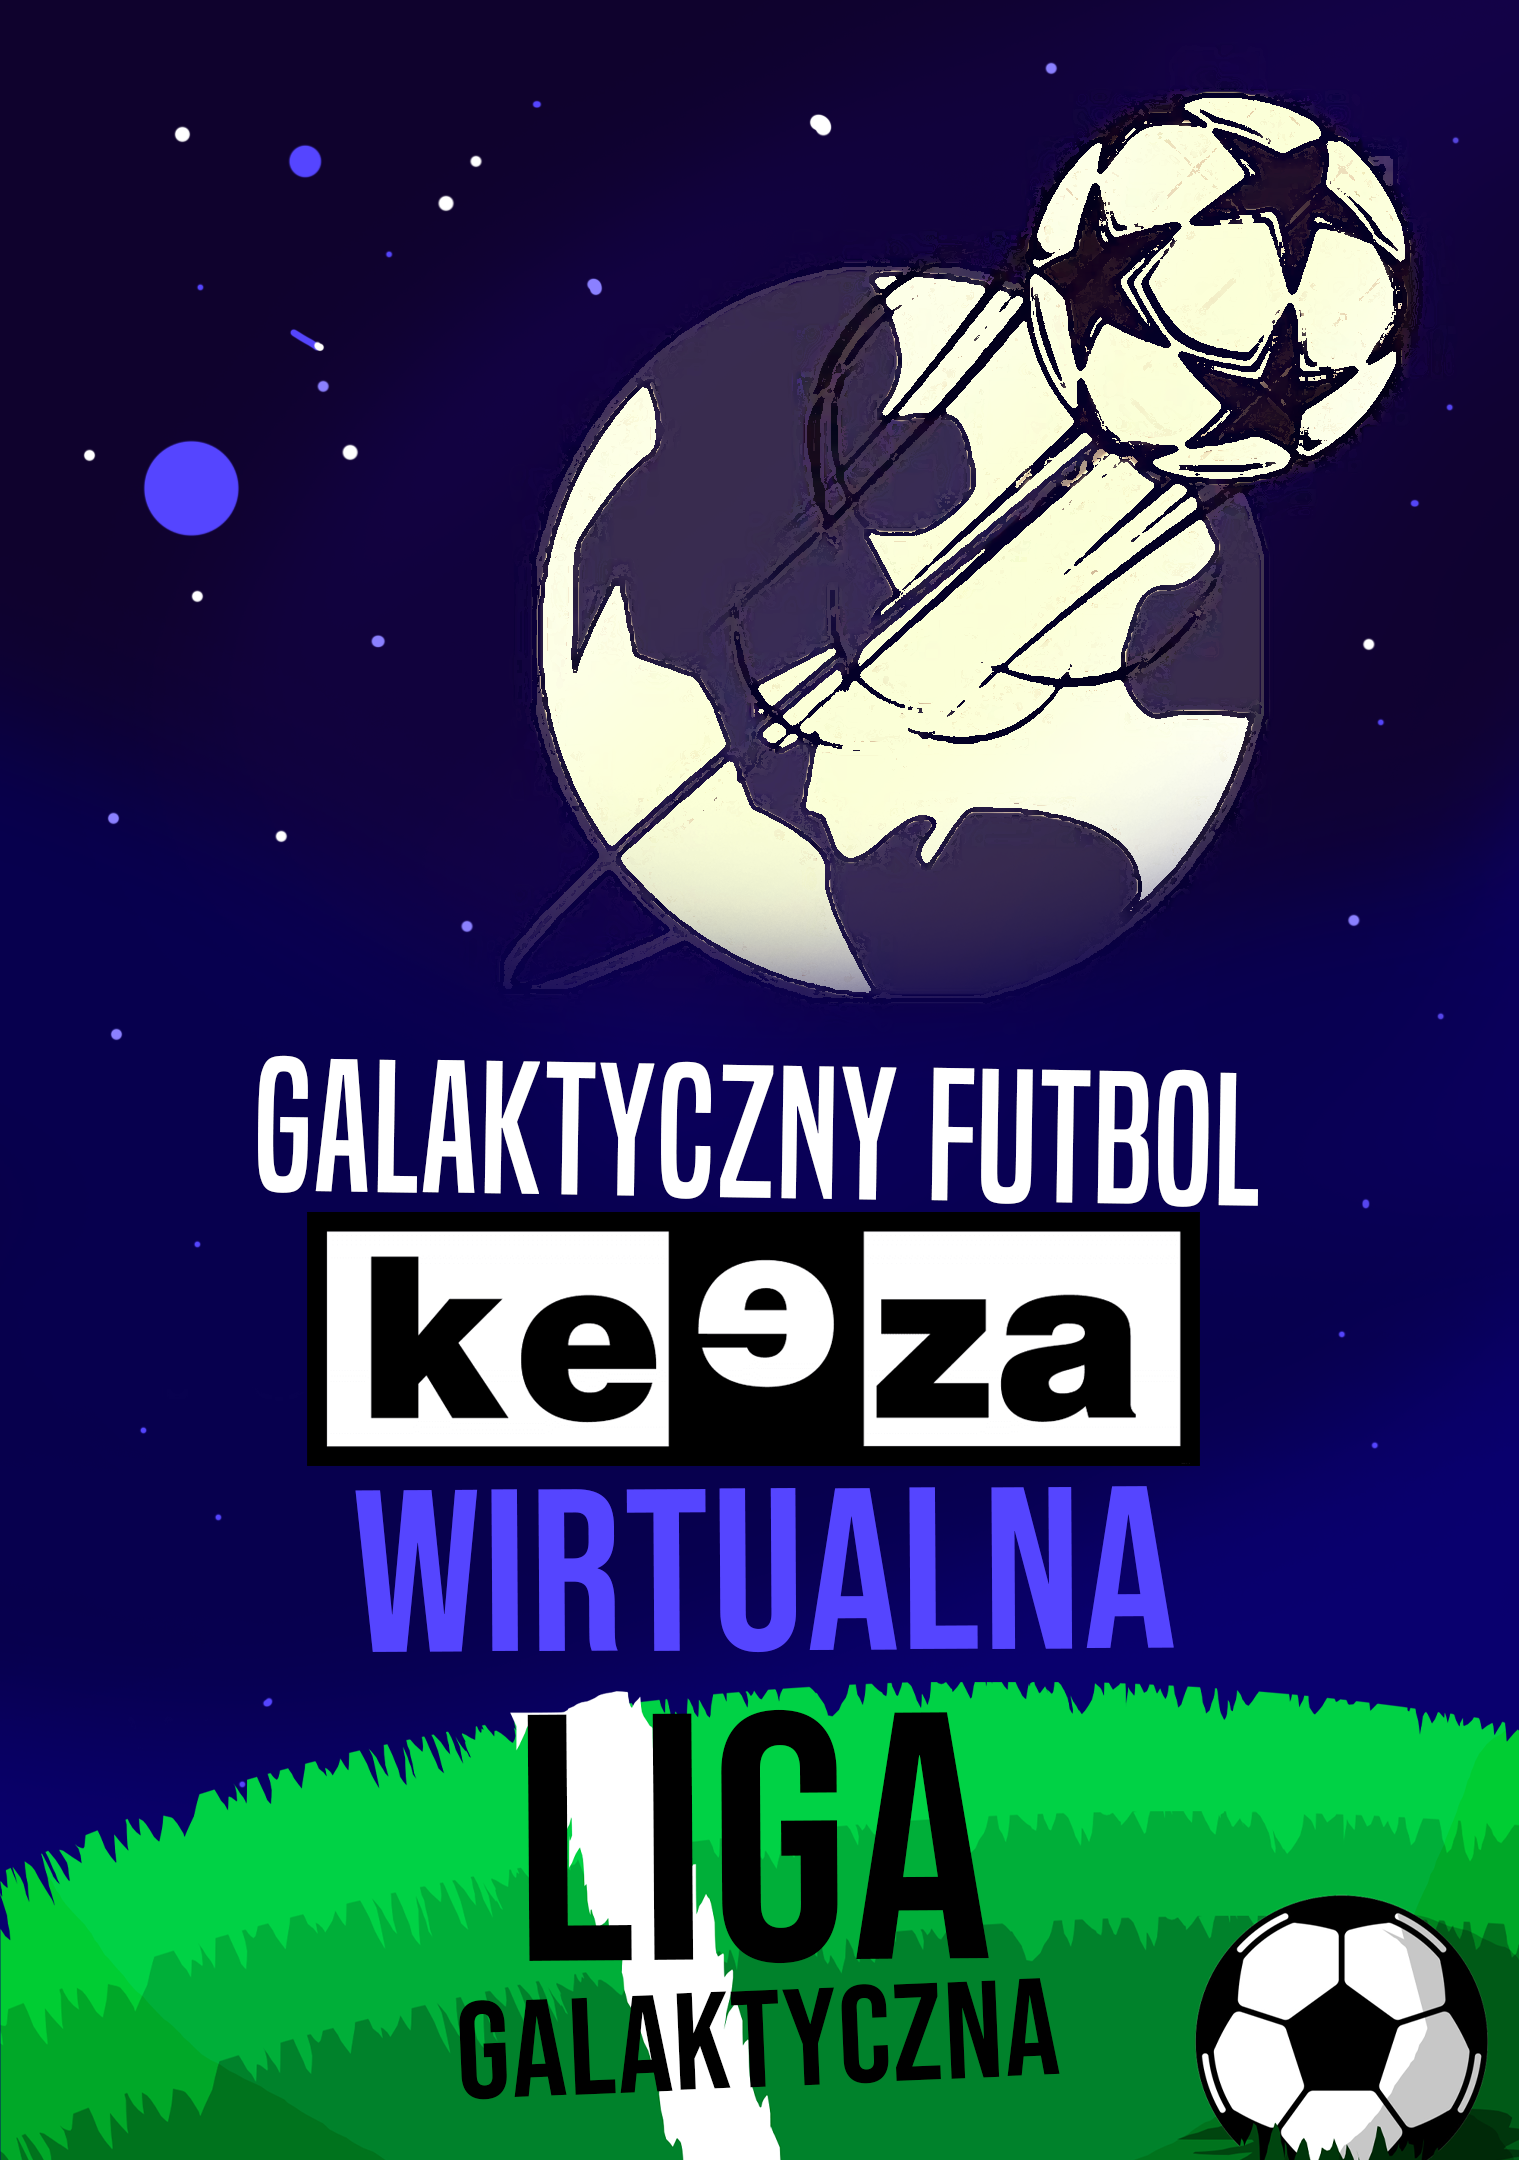 Wirtualna Liga Galaktyczna KEEZA. Wspaniały pojedynek pomiędzy Madziarem Nieporęt i Zalesiem Wójcice w 10. kolejce